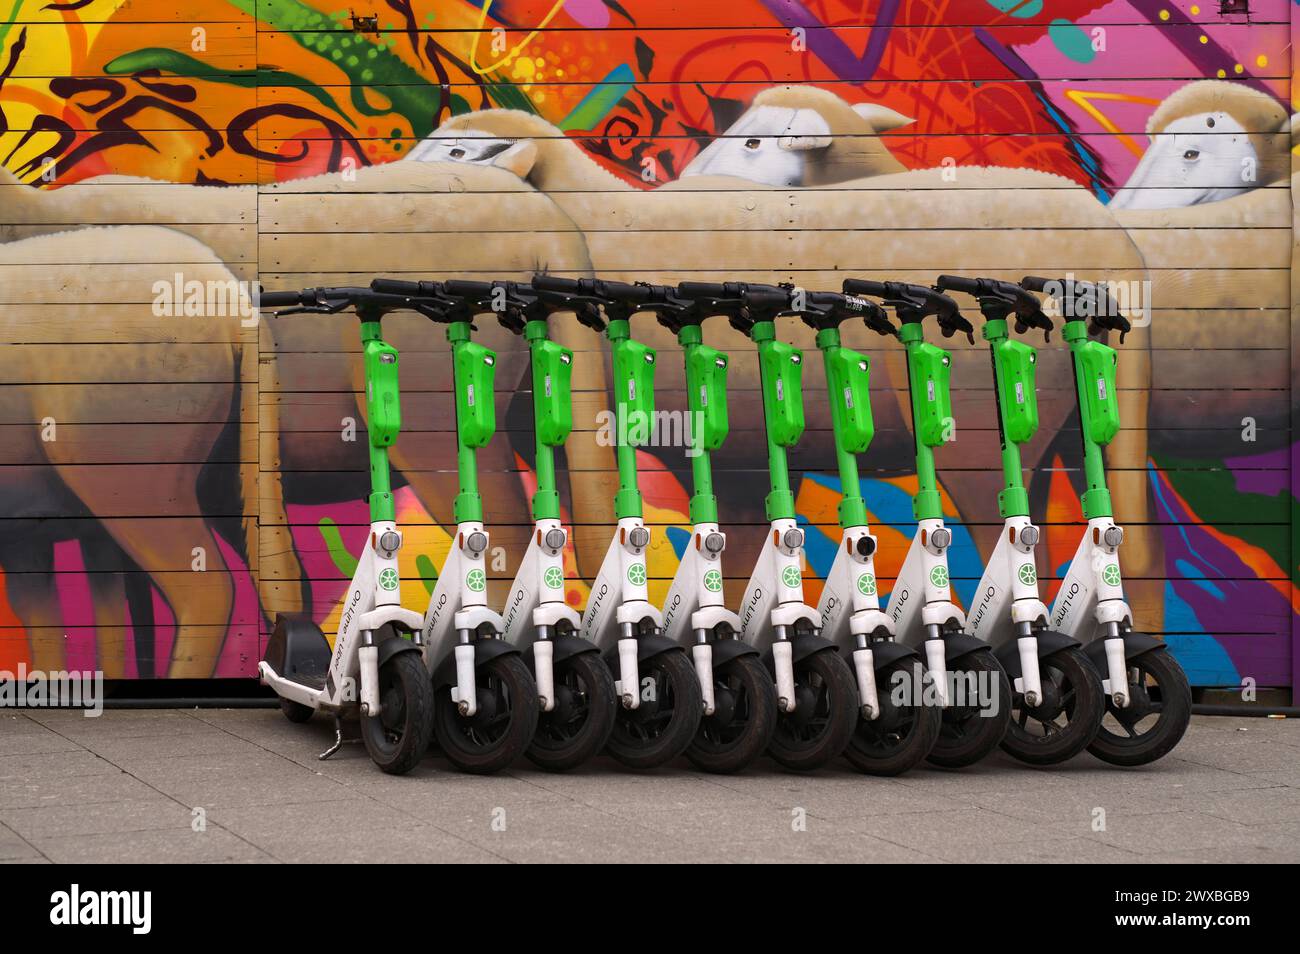 Diversi scooter elettrici parcheggiati nel noleggio bici della società Lime, OnLime e Uber, dietro di esso recinzione di costruzione con pecore, gregge di pecore Foto Stock